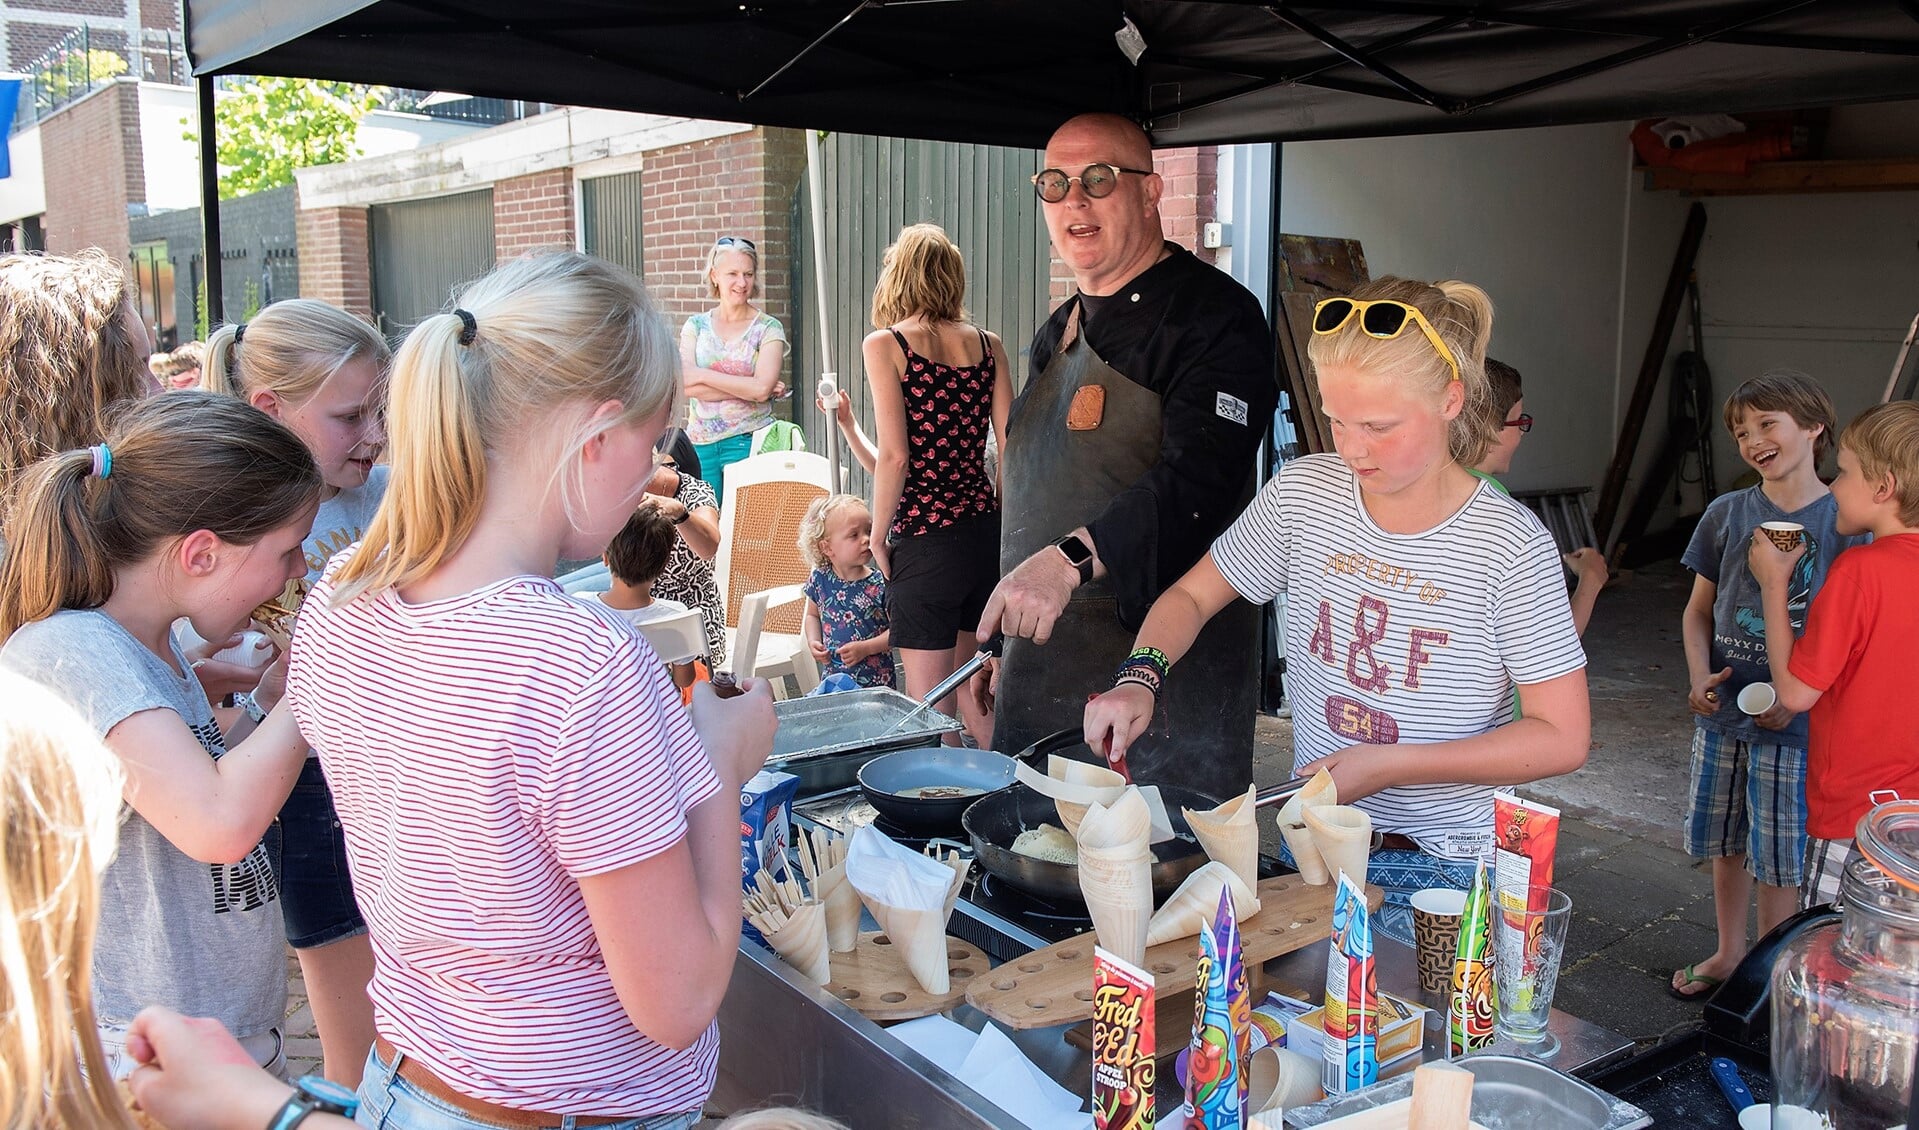 De bekende Haagse tv-kok Pierre Wind kwam persoonlijk langs om te helpen pannenkoeken te bakken (foto: Michel Groen).